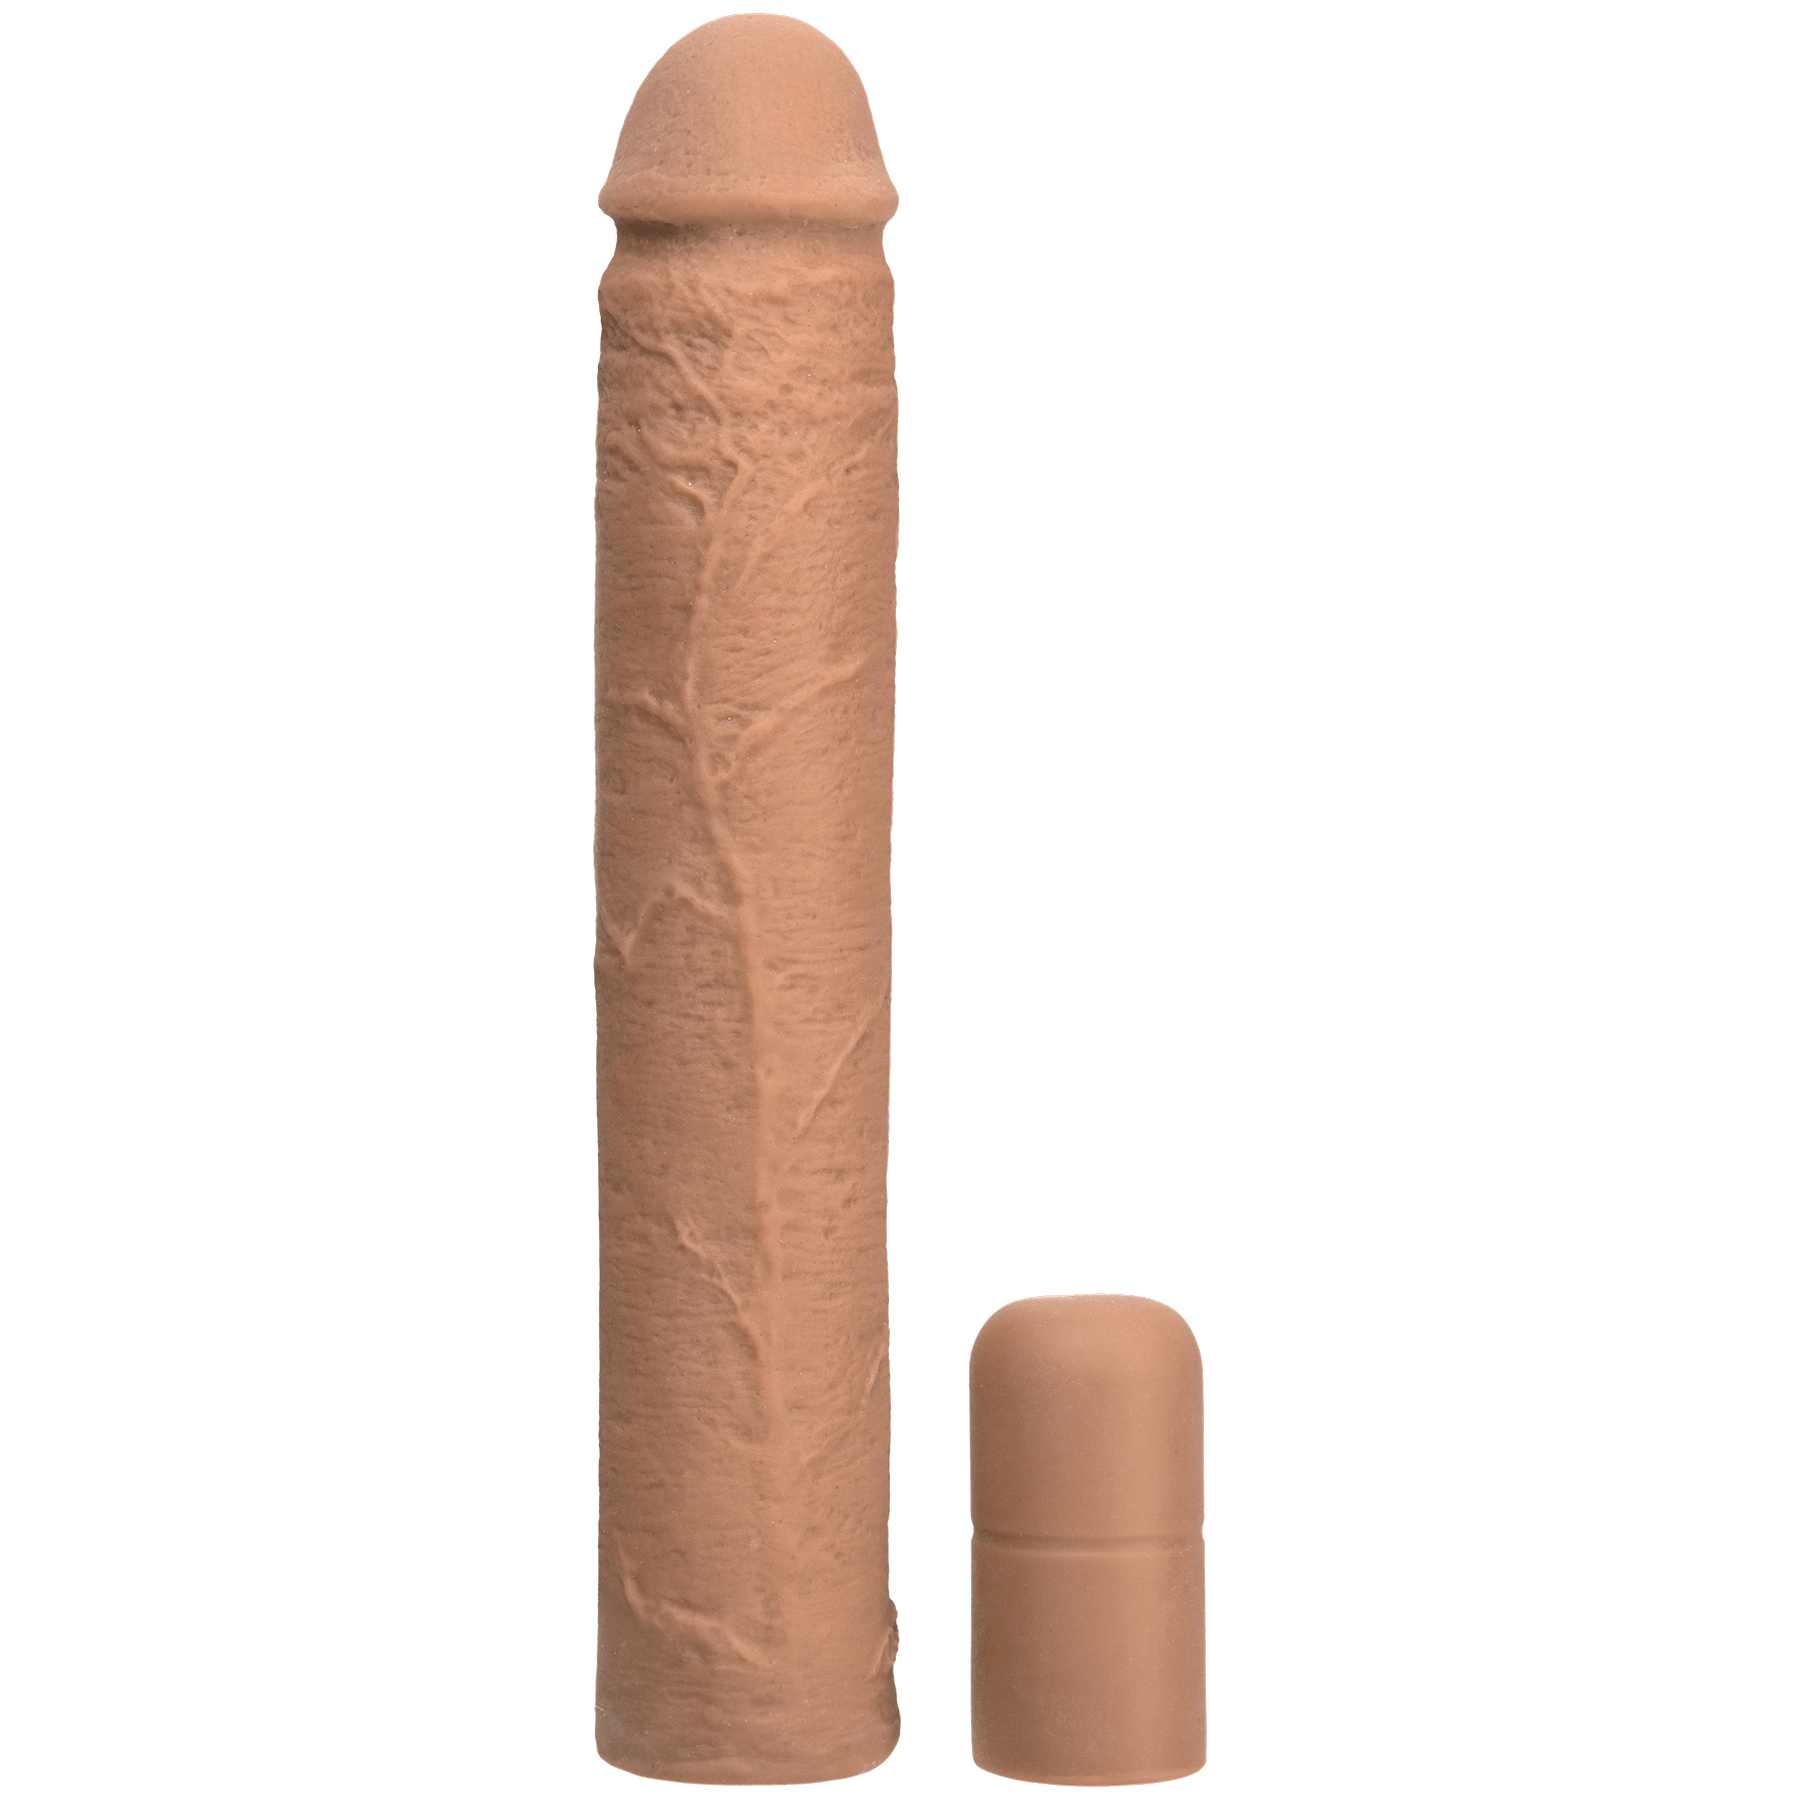 Doc Johnson Xtend It Kit • 9.25" Penis Extender